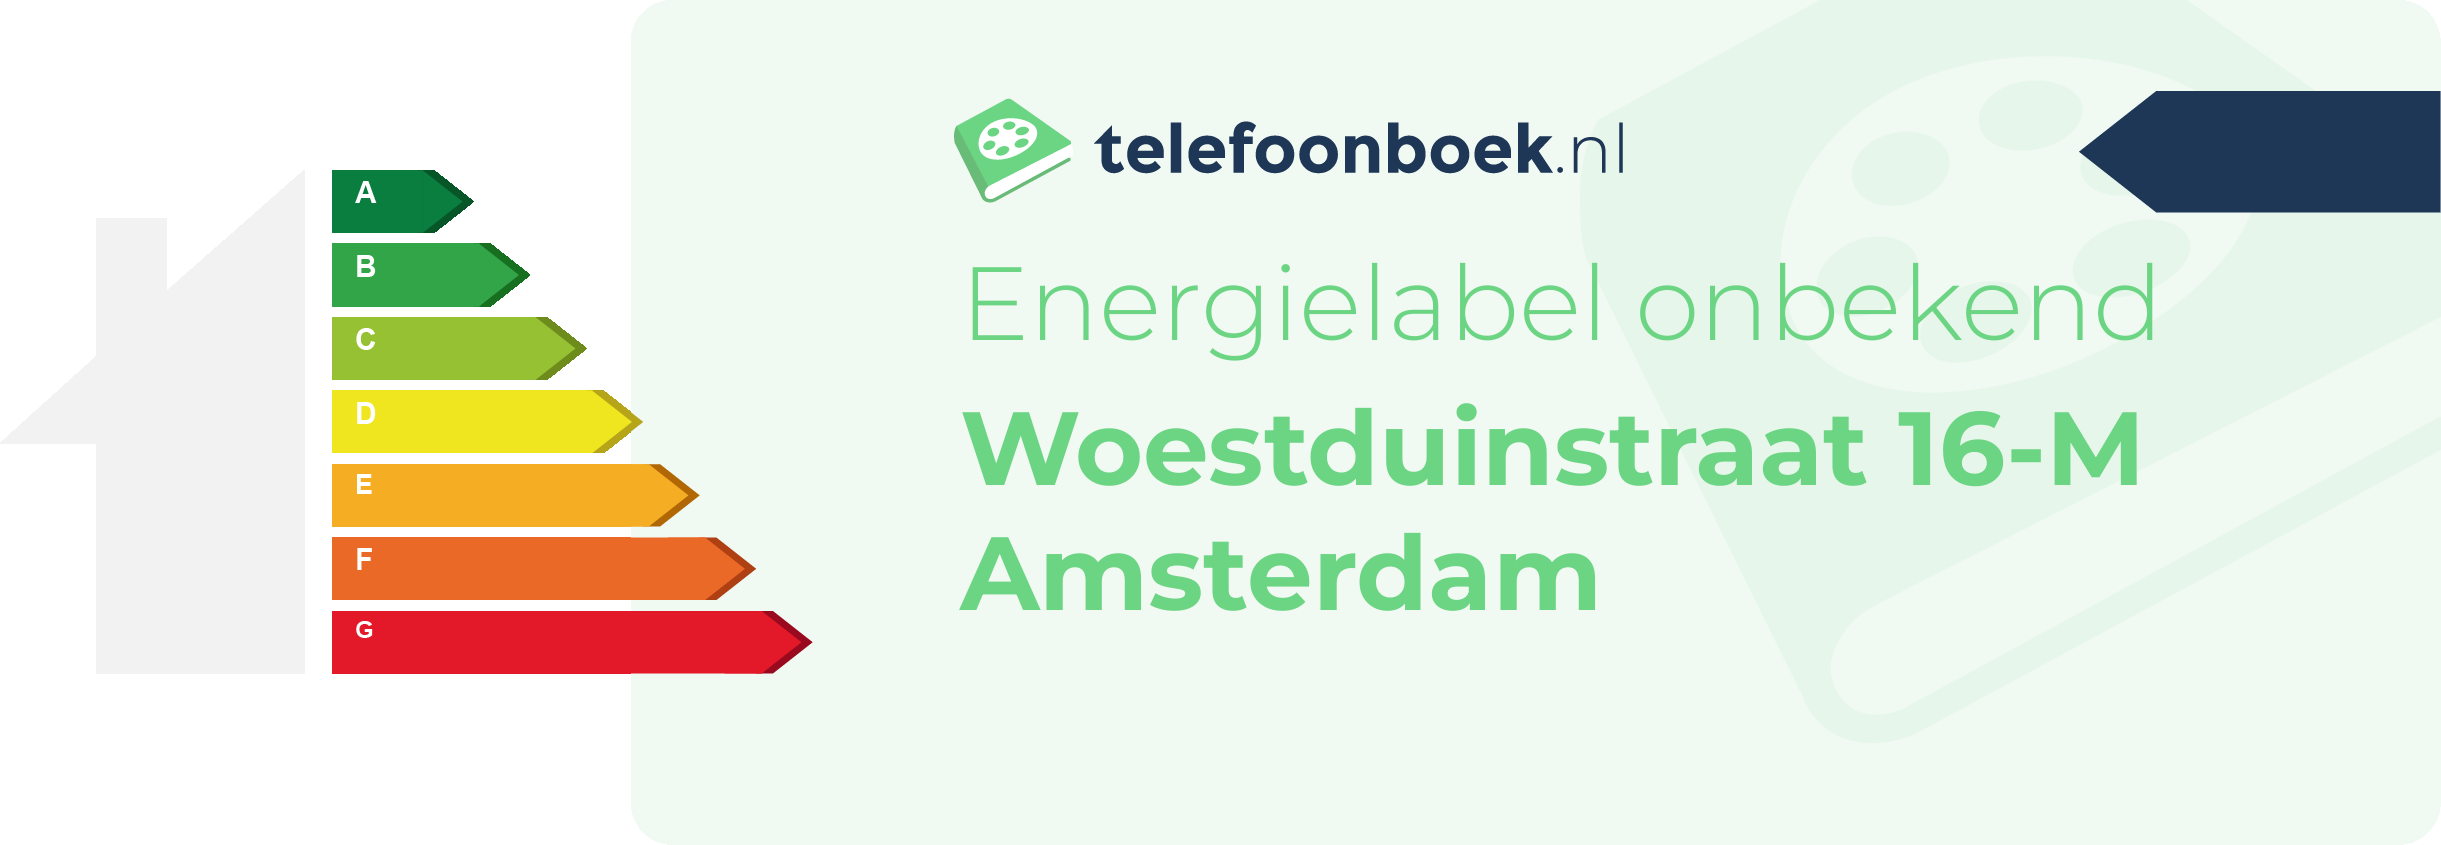 Energielabel Woestduinstraat 16-M Amsterdam